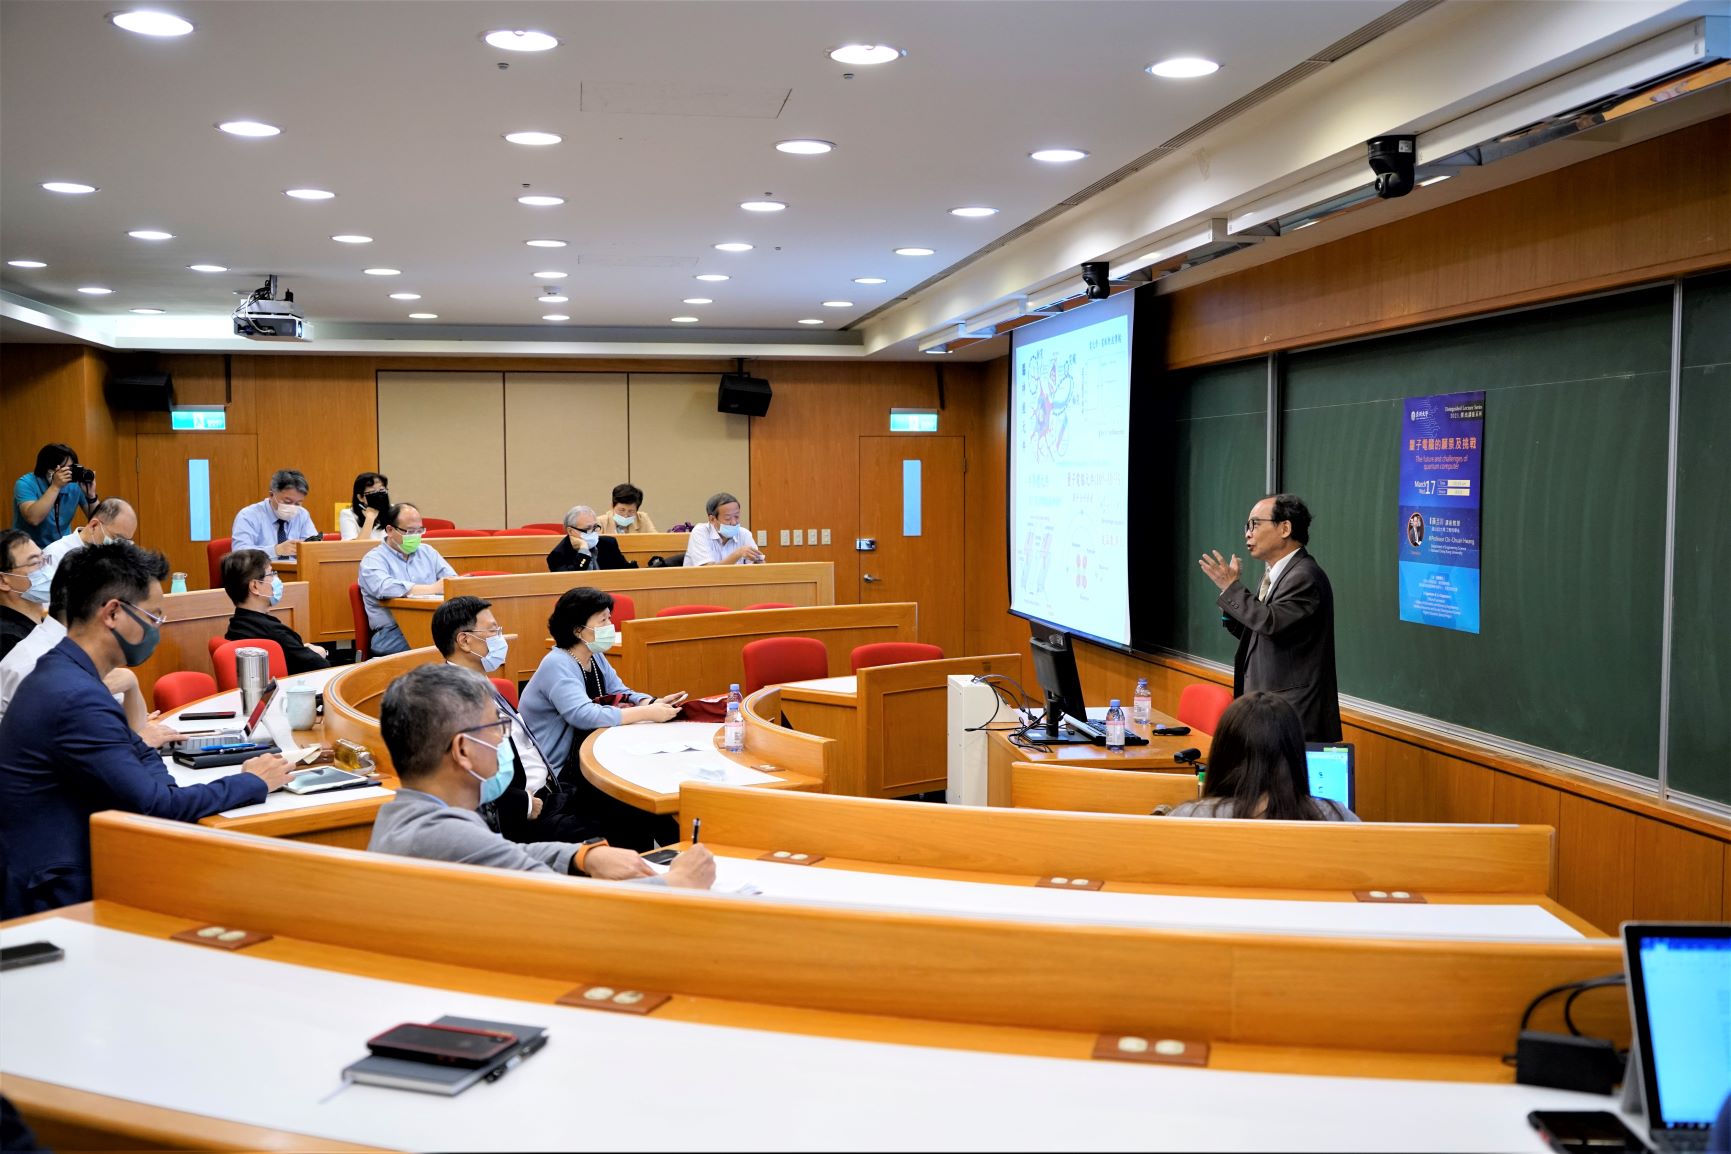 亞大邀請成大黃吉川講座教授演講「量子電腦的願景及挑戰」。